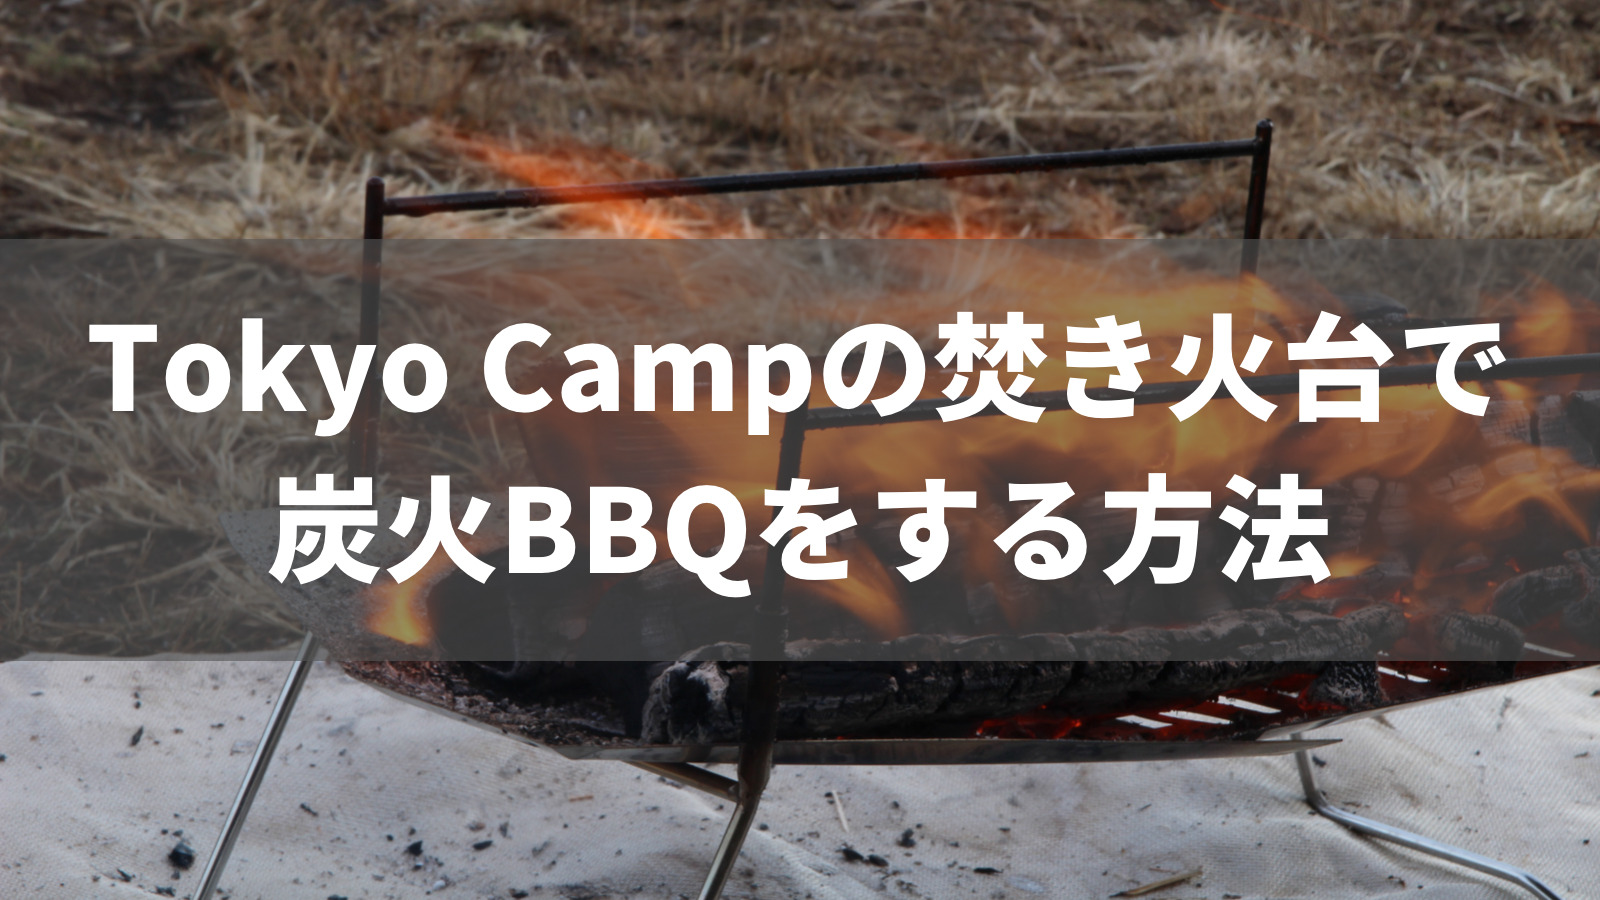 定期入れの tokyocamp焚き火台 ステンレス ３段フレーム 東京キャンプ 焚き火台 焚き火 焚火 東京キャンプ焚き火台 スピット 